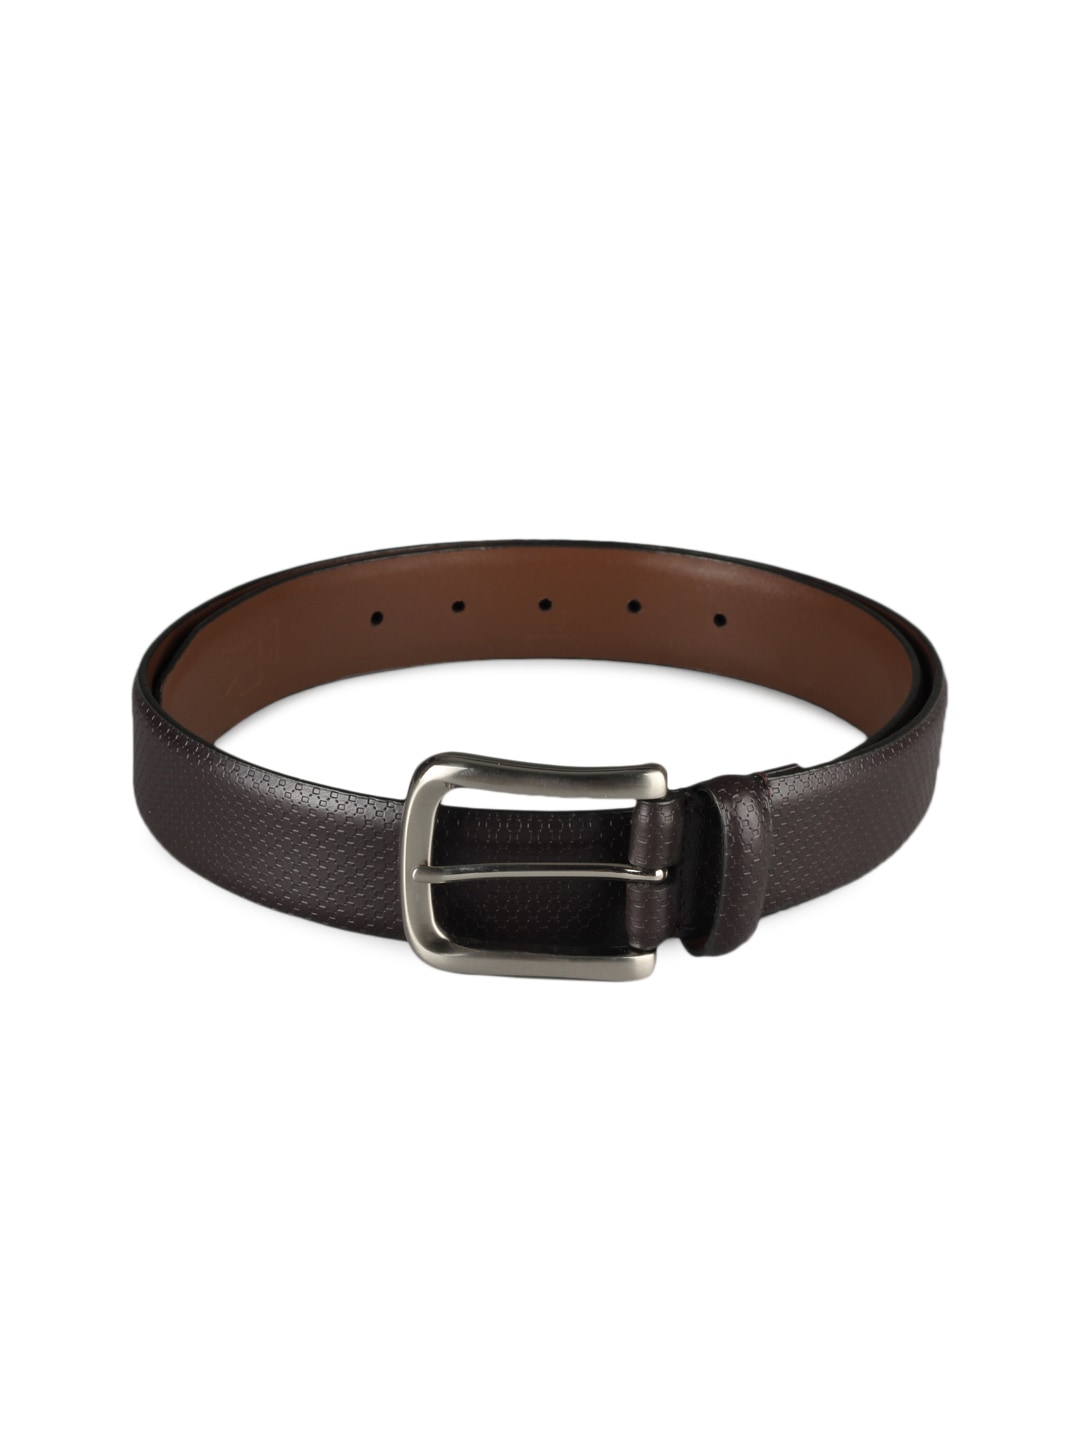 Basics Men Brown Leather Belt